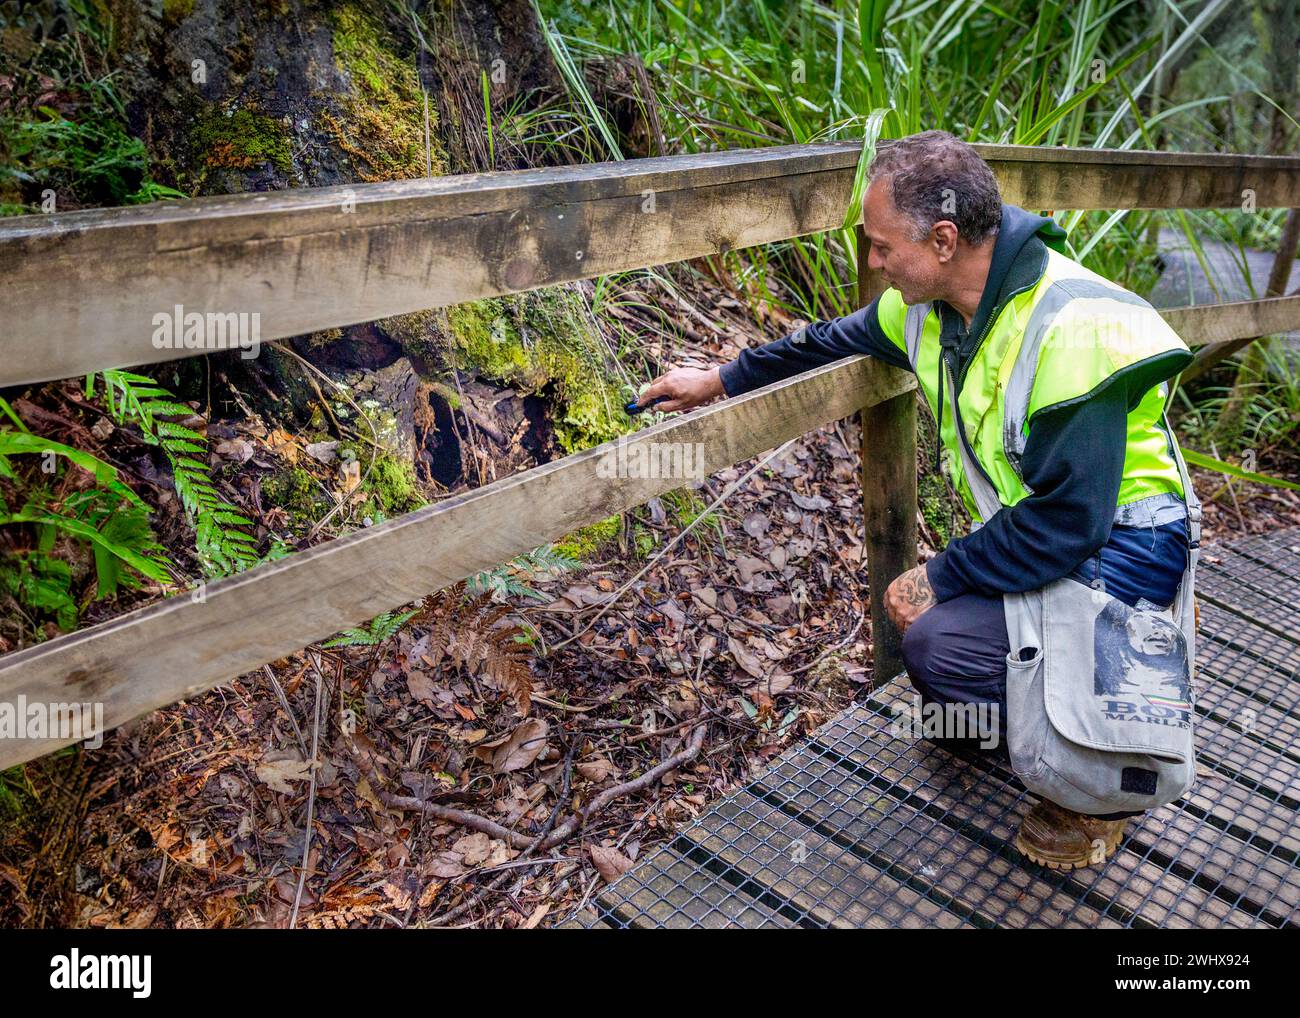 Guida che indica un habitat di uccelli kiwi bruni alla base di un albero nell'antica foresta di Waipoua Kauri ad Aotearoa / nuova Zelanda, te Ika-a-Maui / Māori Foto Stock